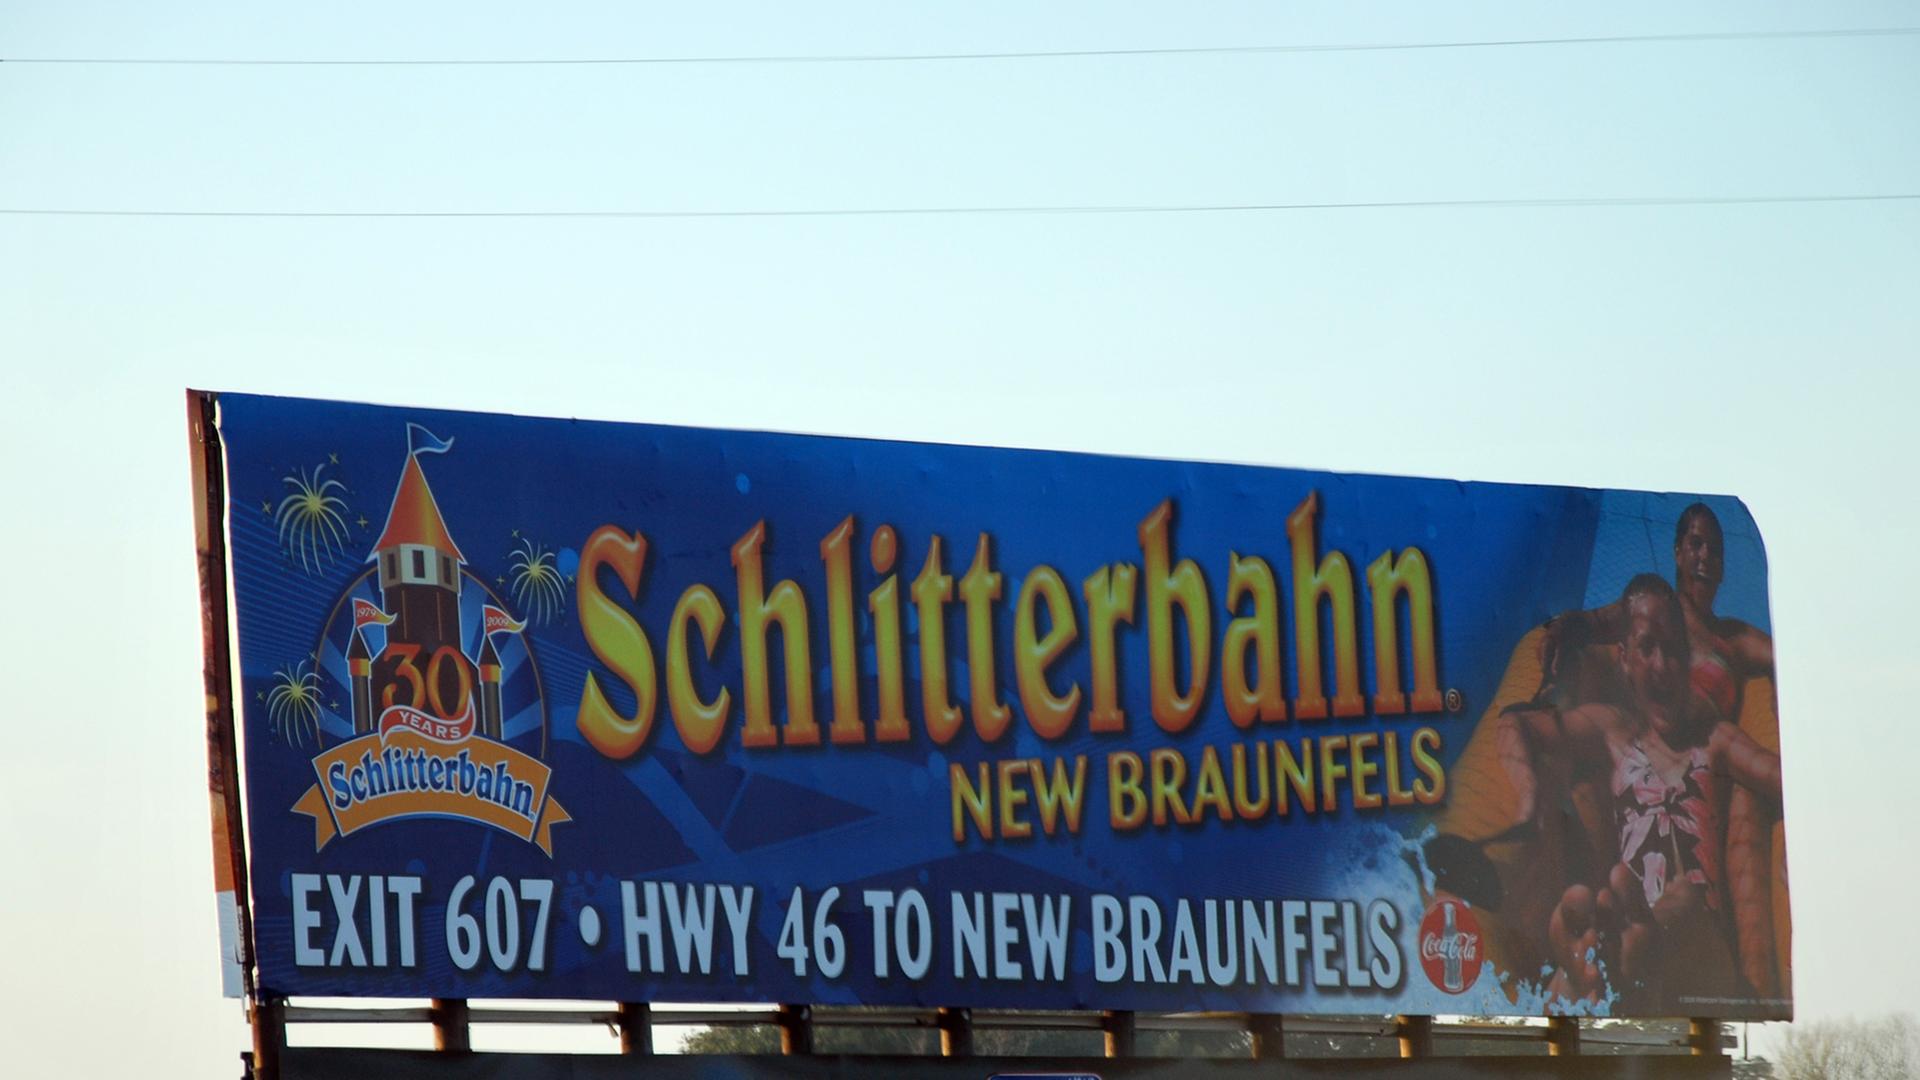 Großes blaues Schild am Straßenrand mit Aufschrift: Schlitterbahn New Braunfels, Exit 607, HWY 46 to New Braunfels